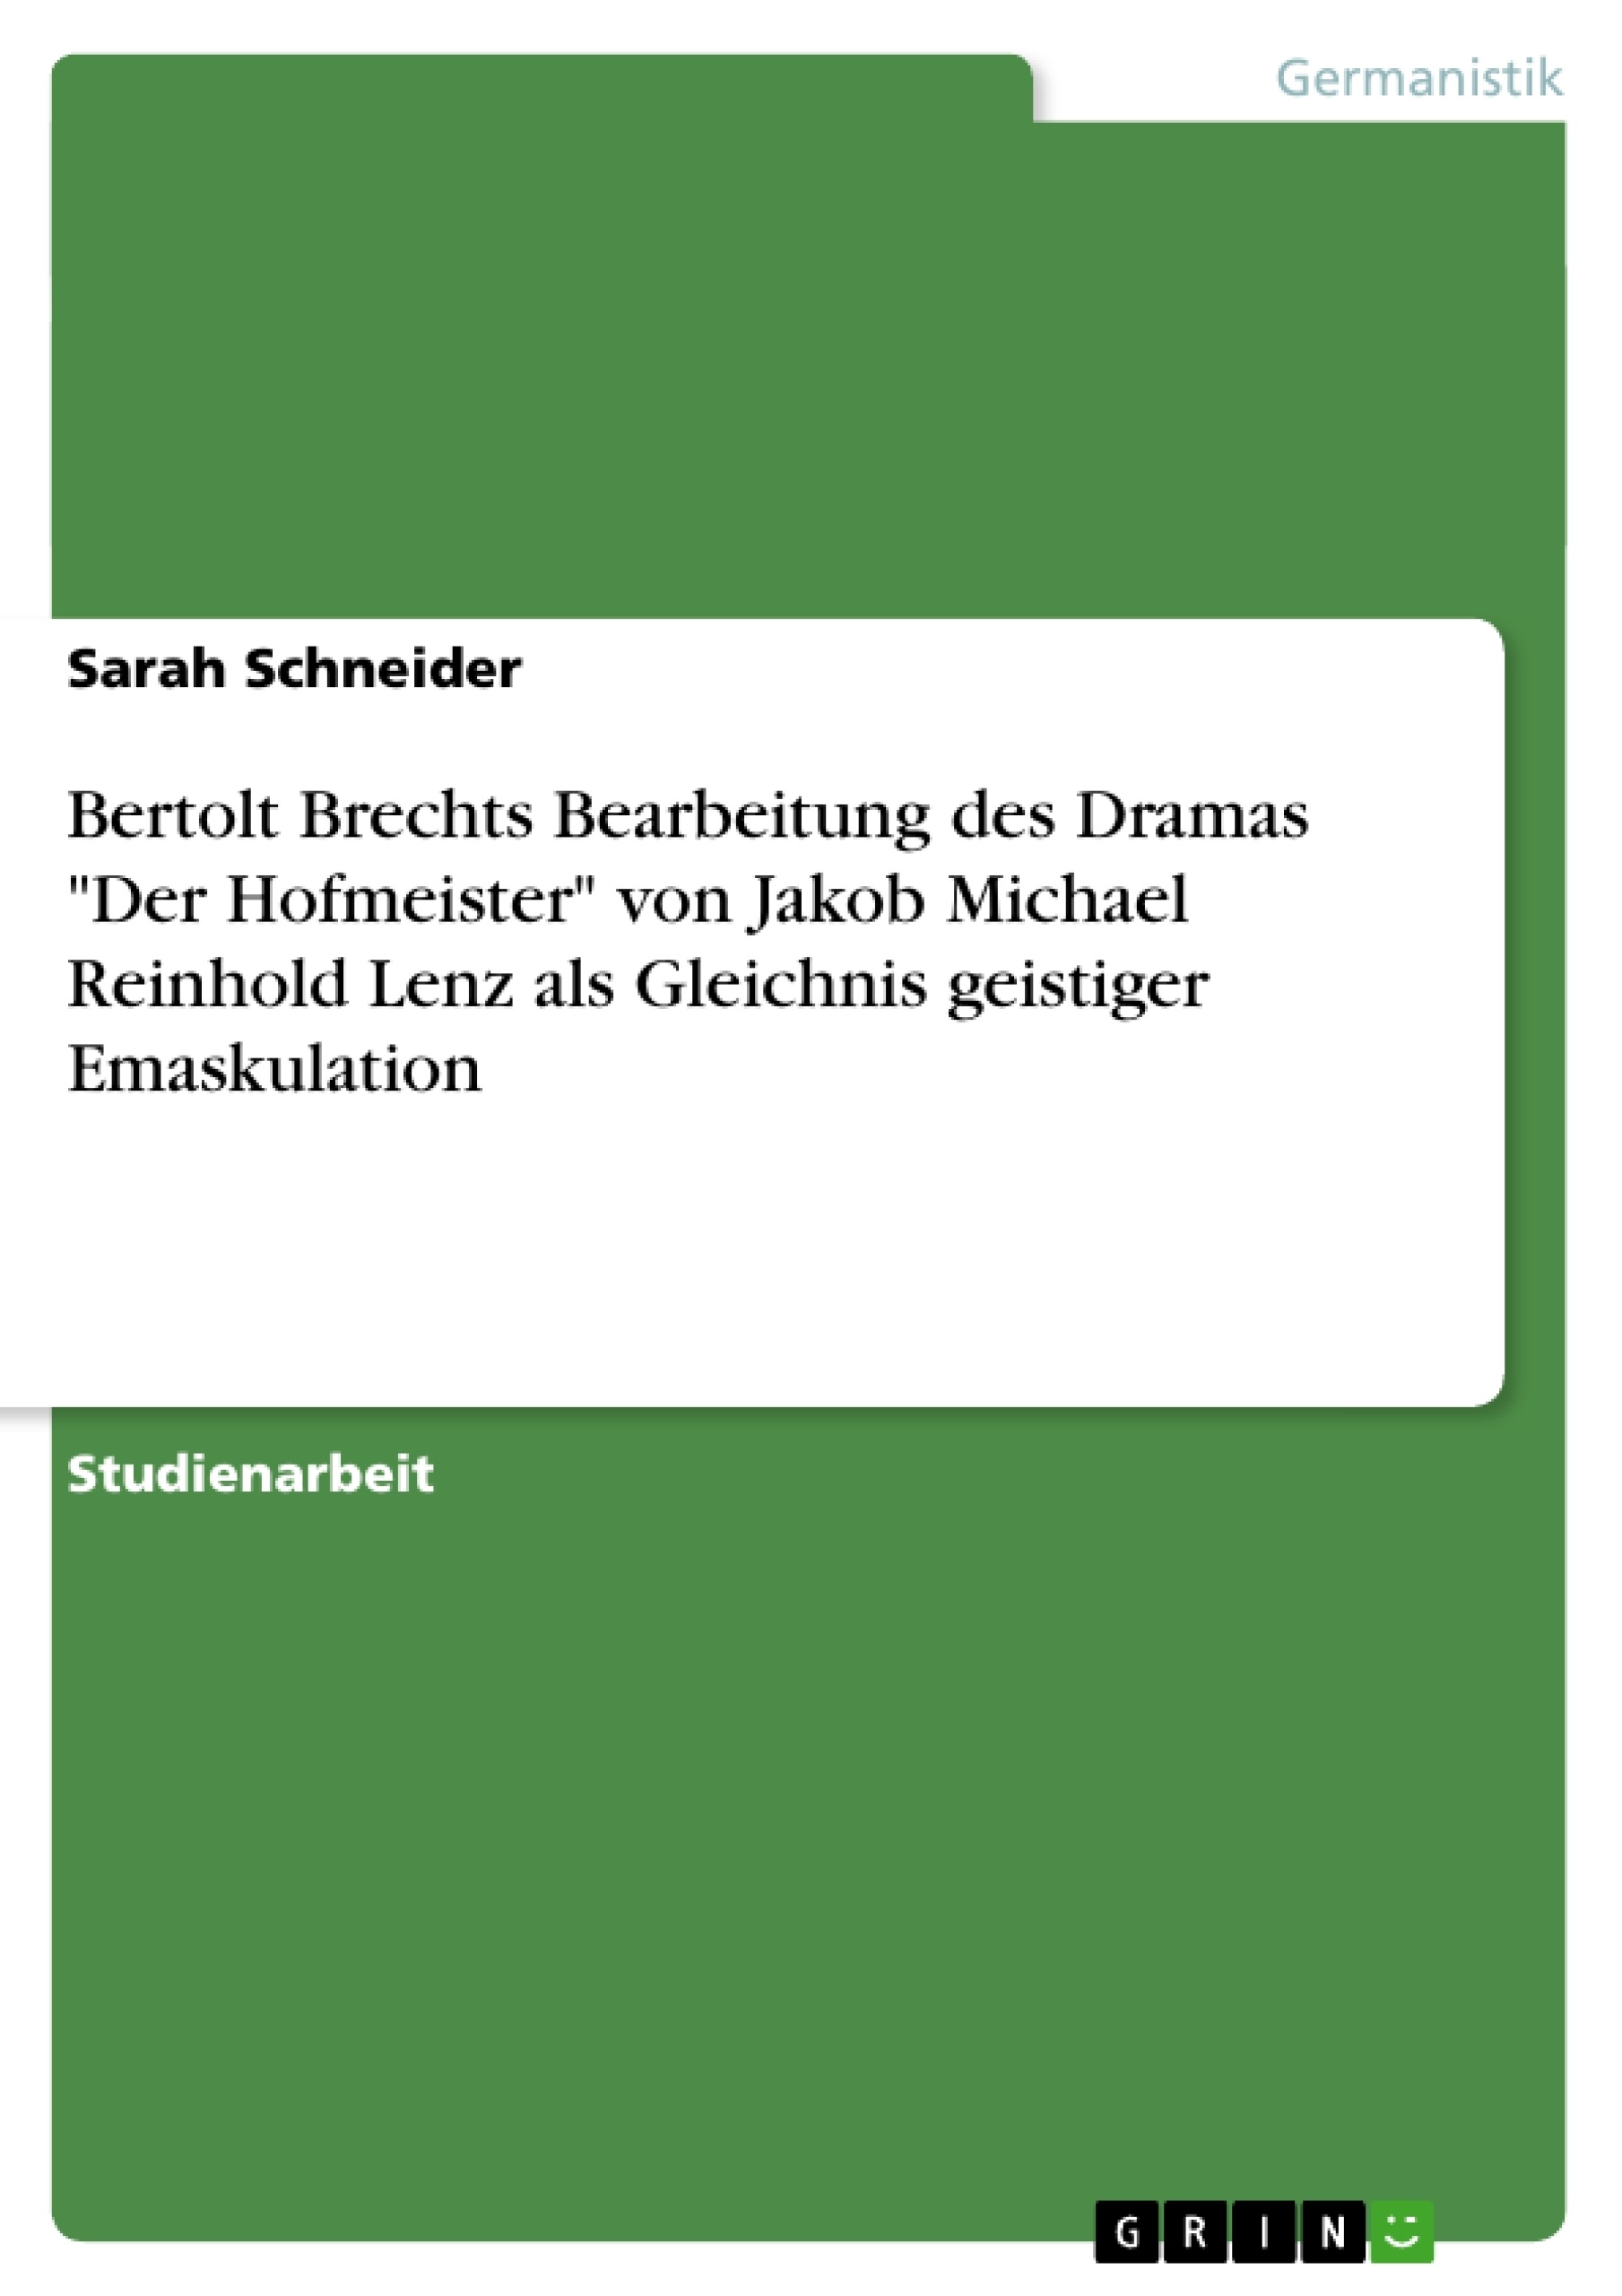 Título: Bertolt Brechts Bearbeitung des Dramas "Der Hofmeister" von Jakob Michael Reinhold Lenz als Gleichnis geistiger Emaskulation